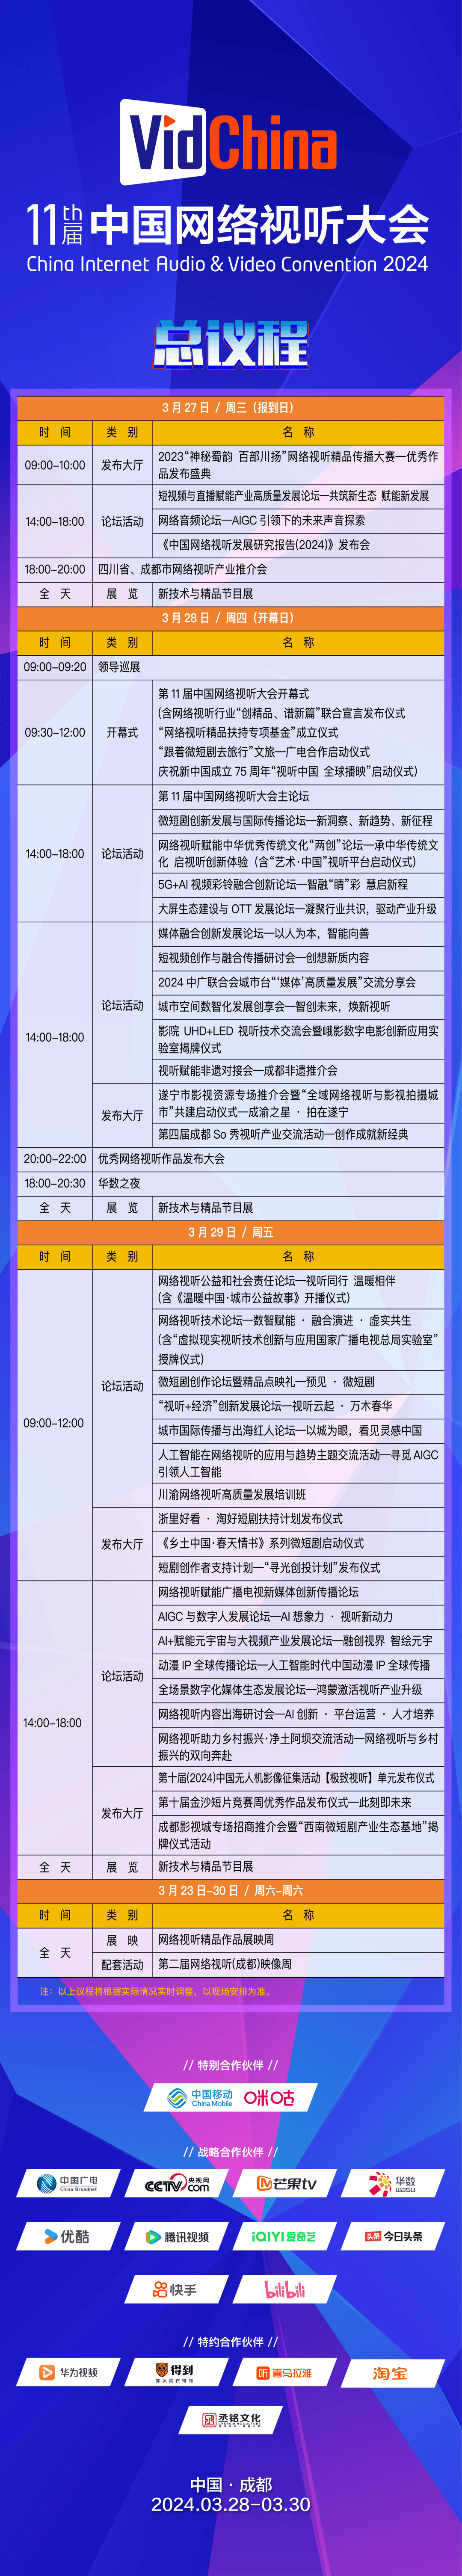 资讯第十一届中国网络视听大会328成都开幕楚门的世界导演彼得威尔